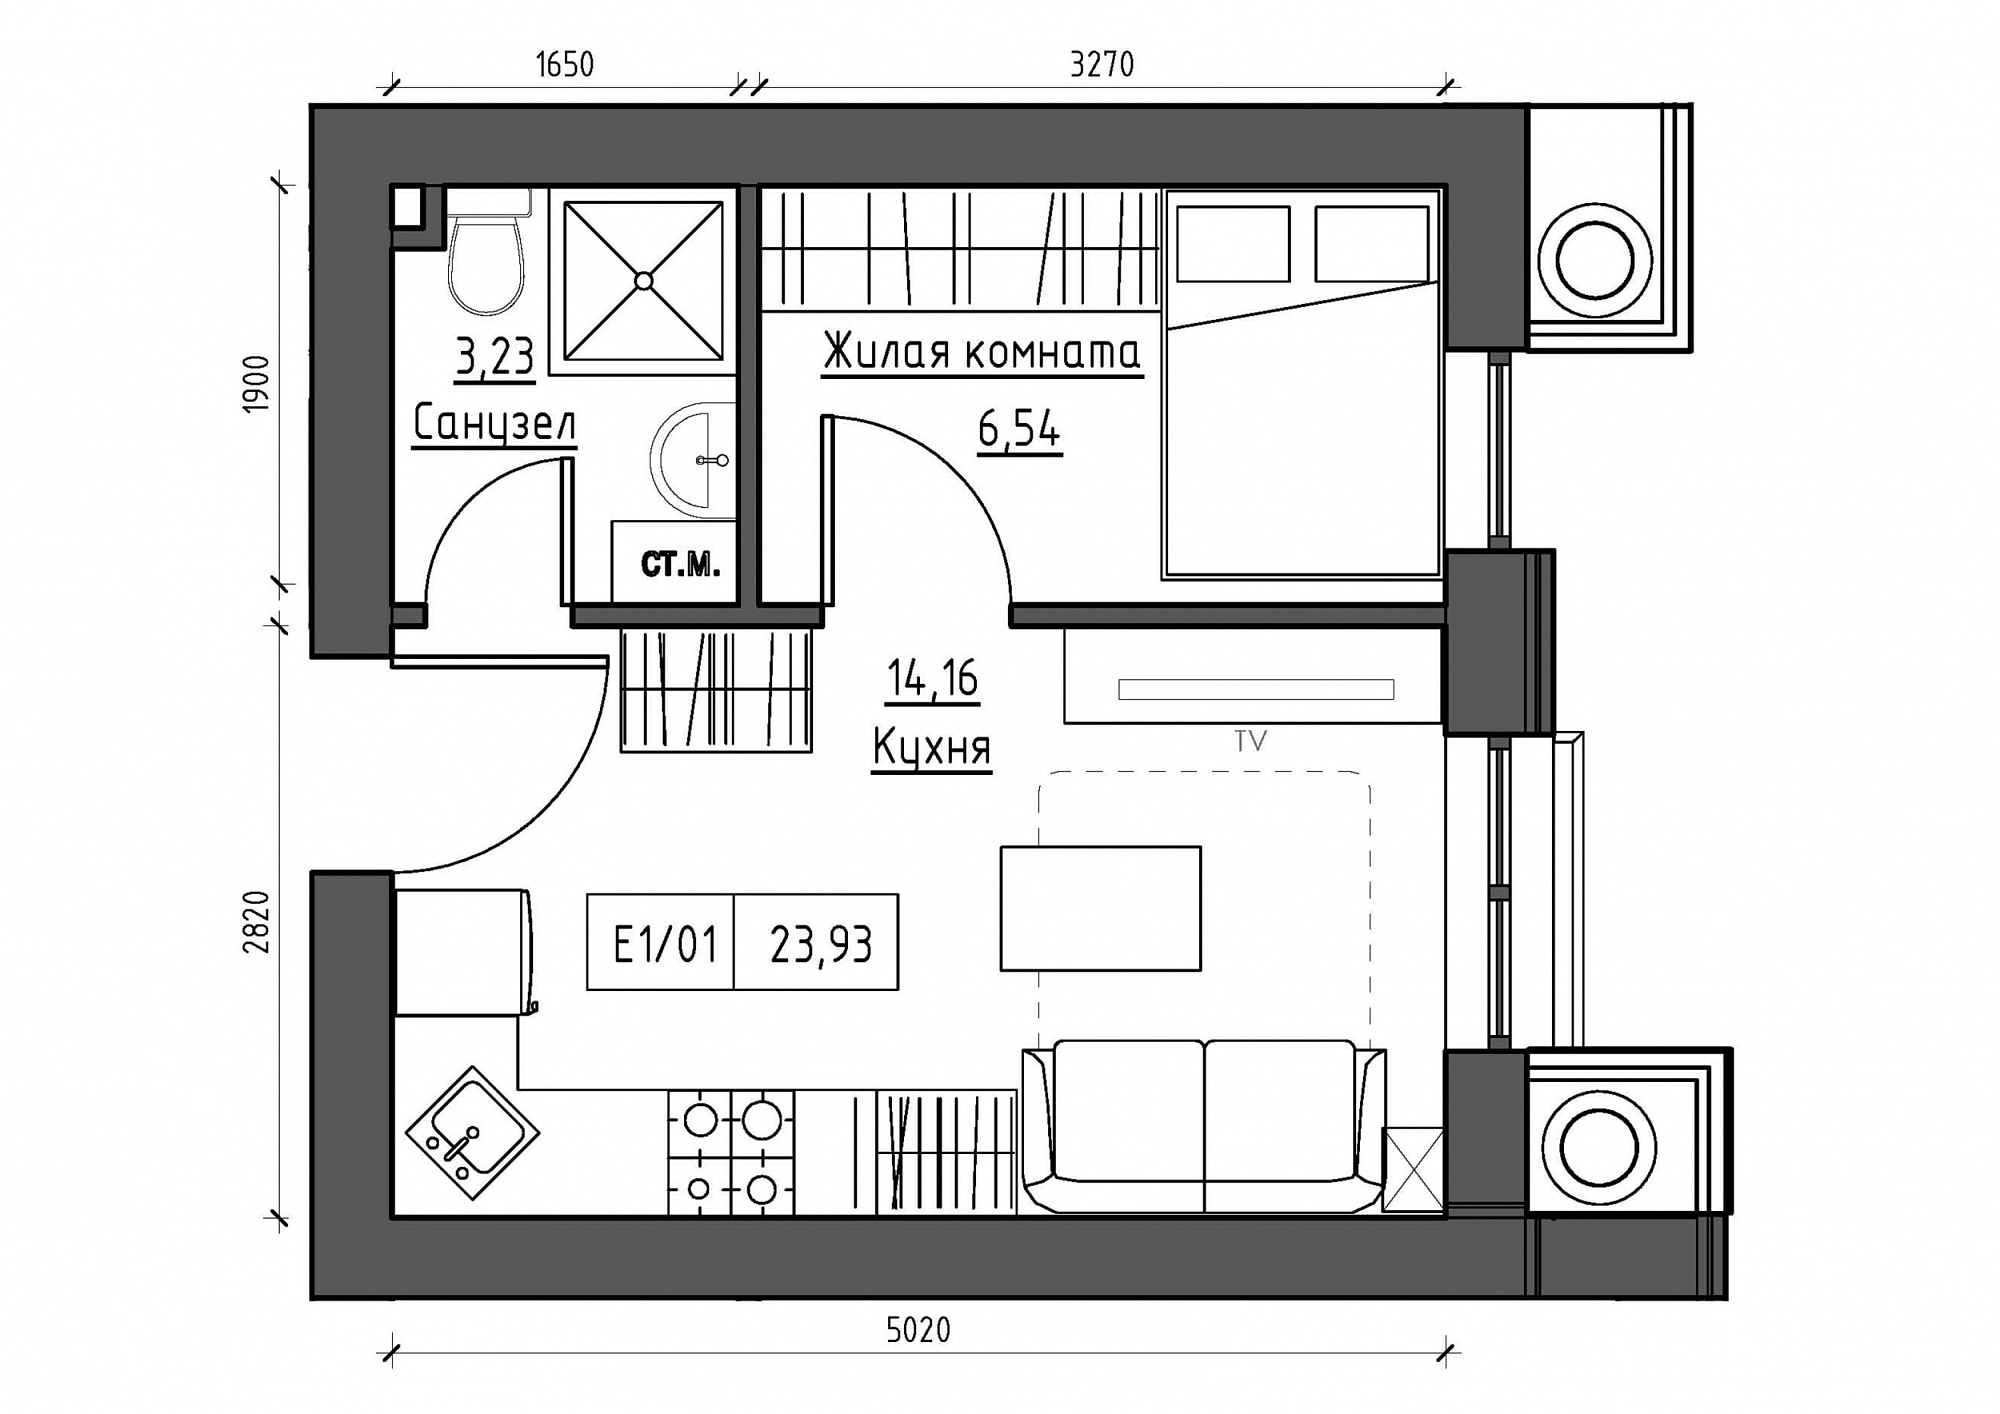 Планировка 1-к квартира площей 23.93м2, KS-011-02/0004.